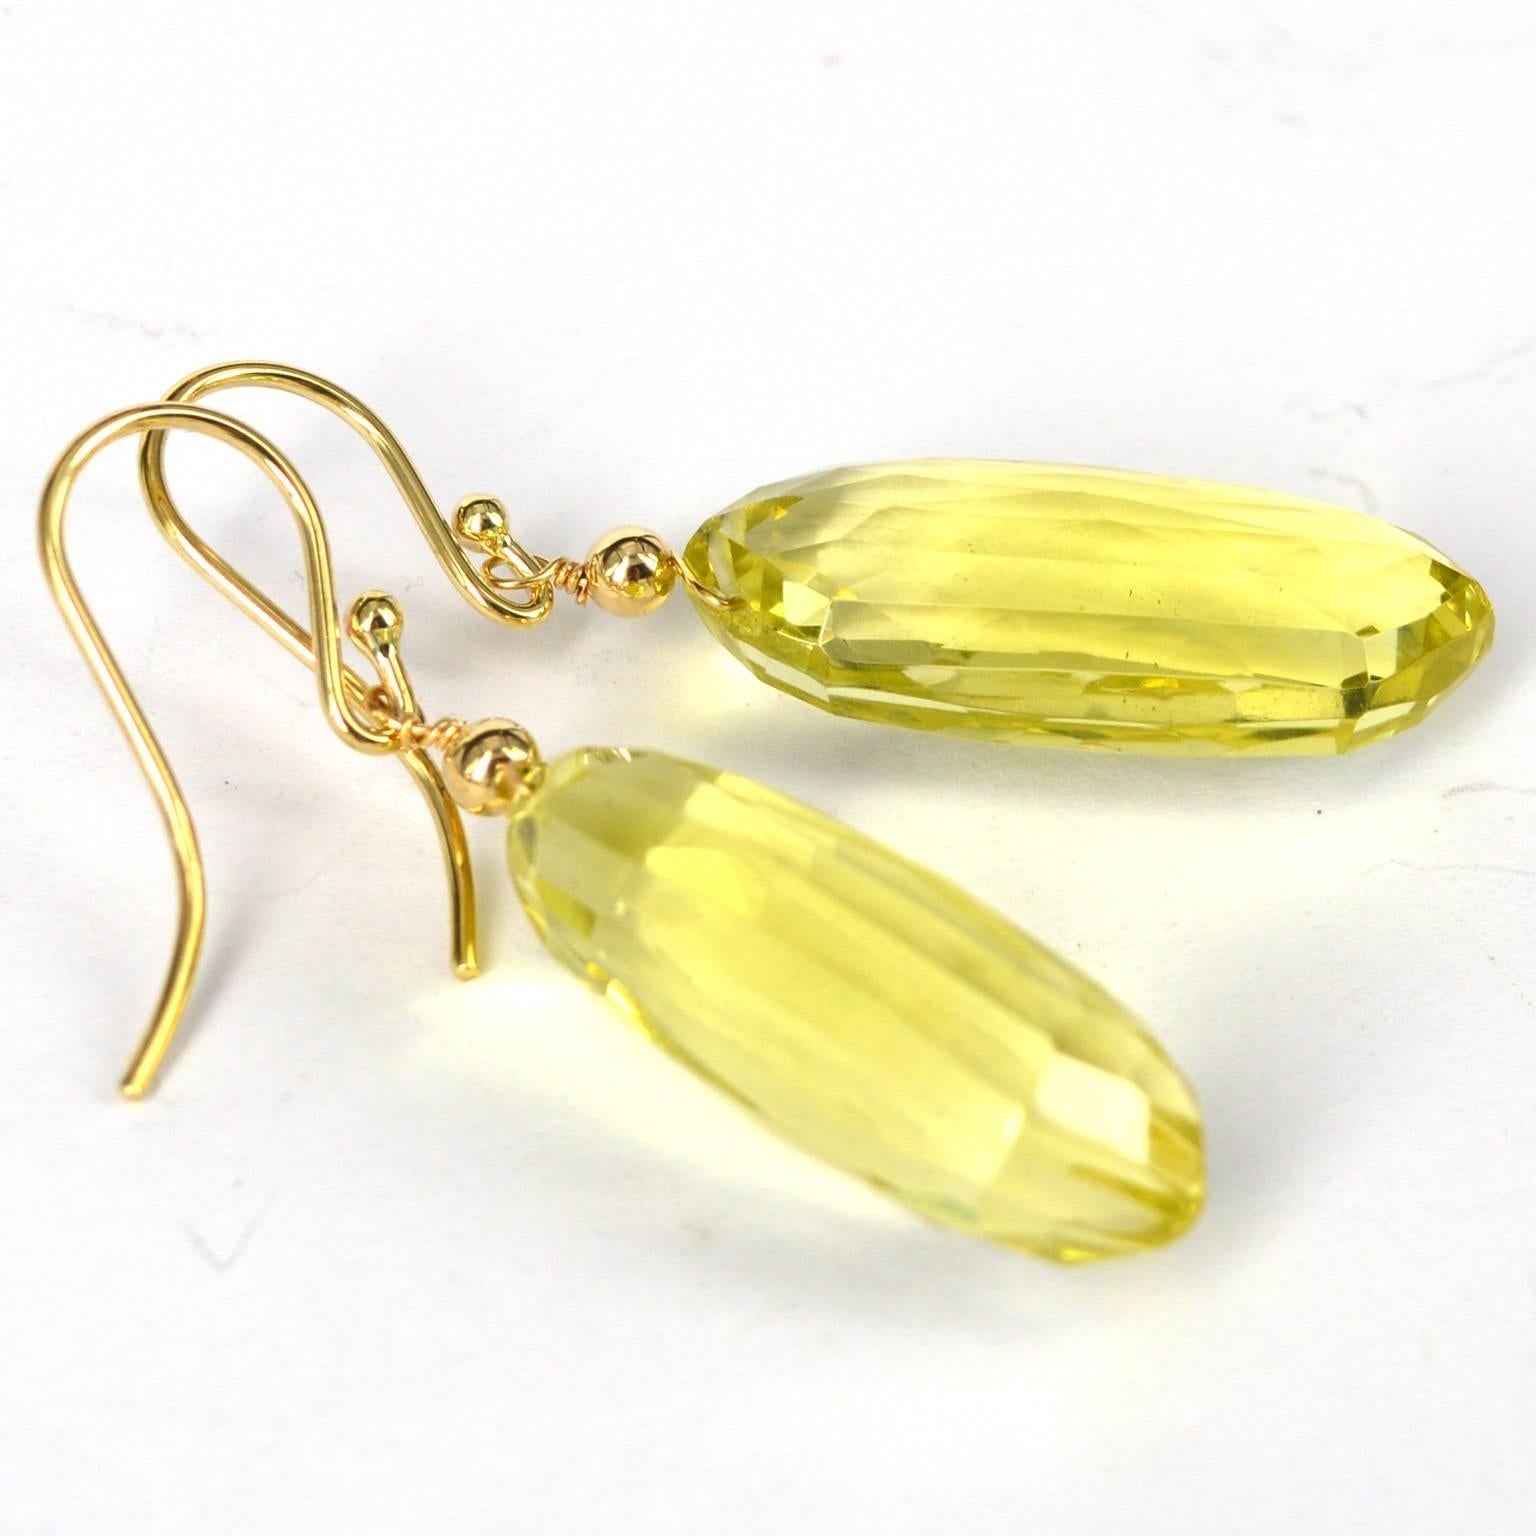 14 karat Gold Earrings with unusual fancy cut Lemon Quartz spears, stones measure 25x11mm.
total length of earrings is 44mm